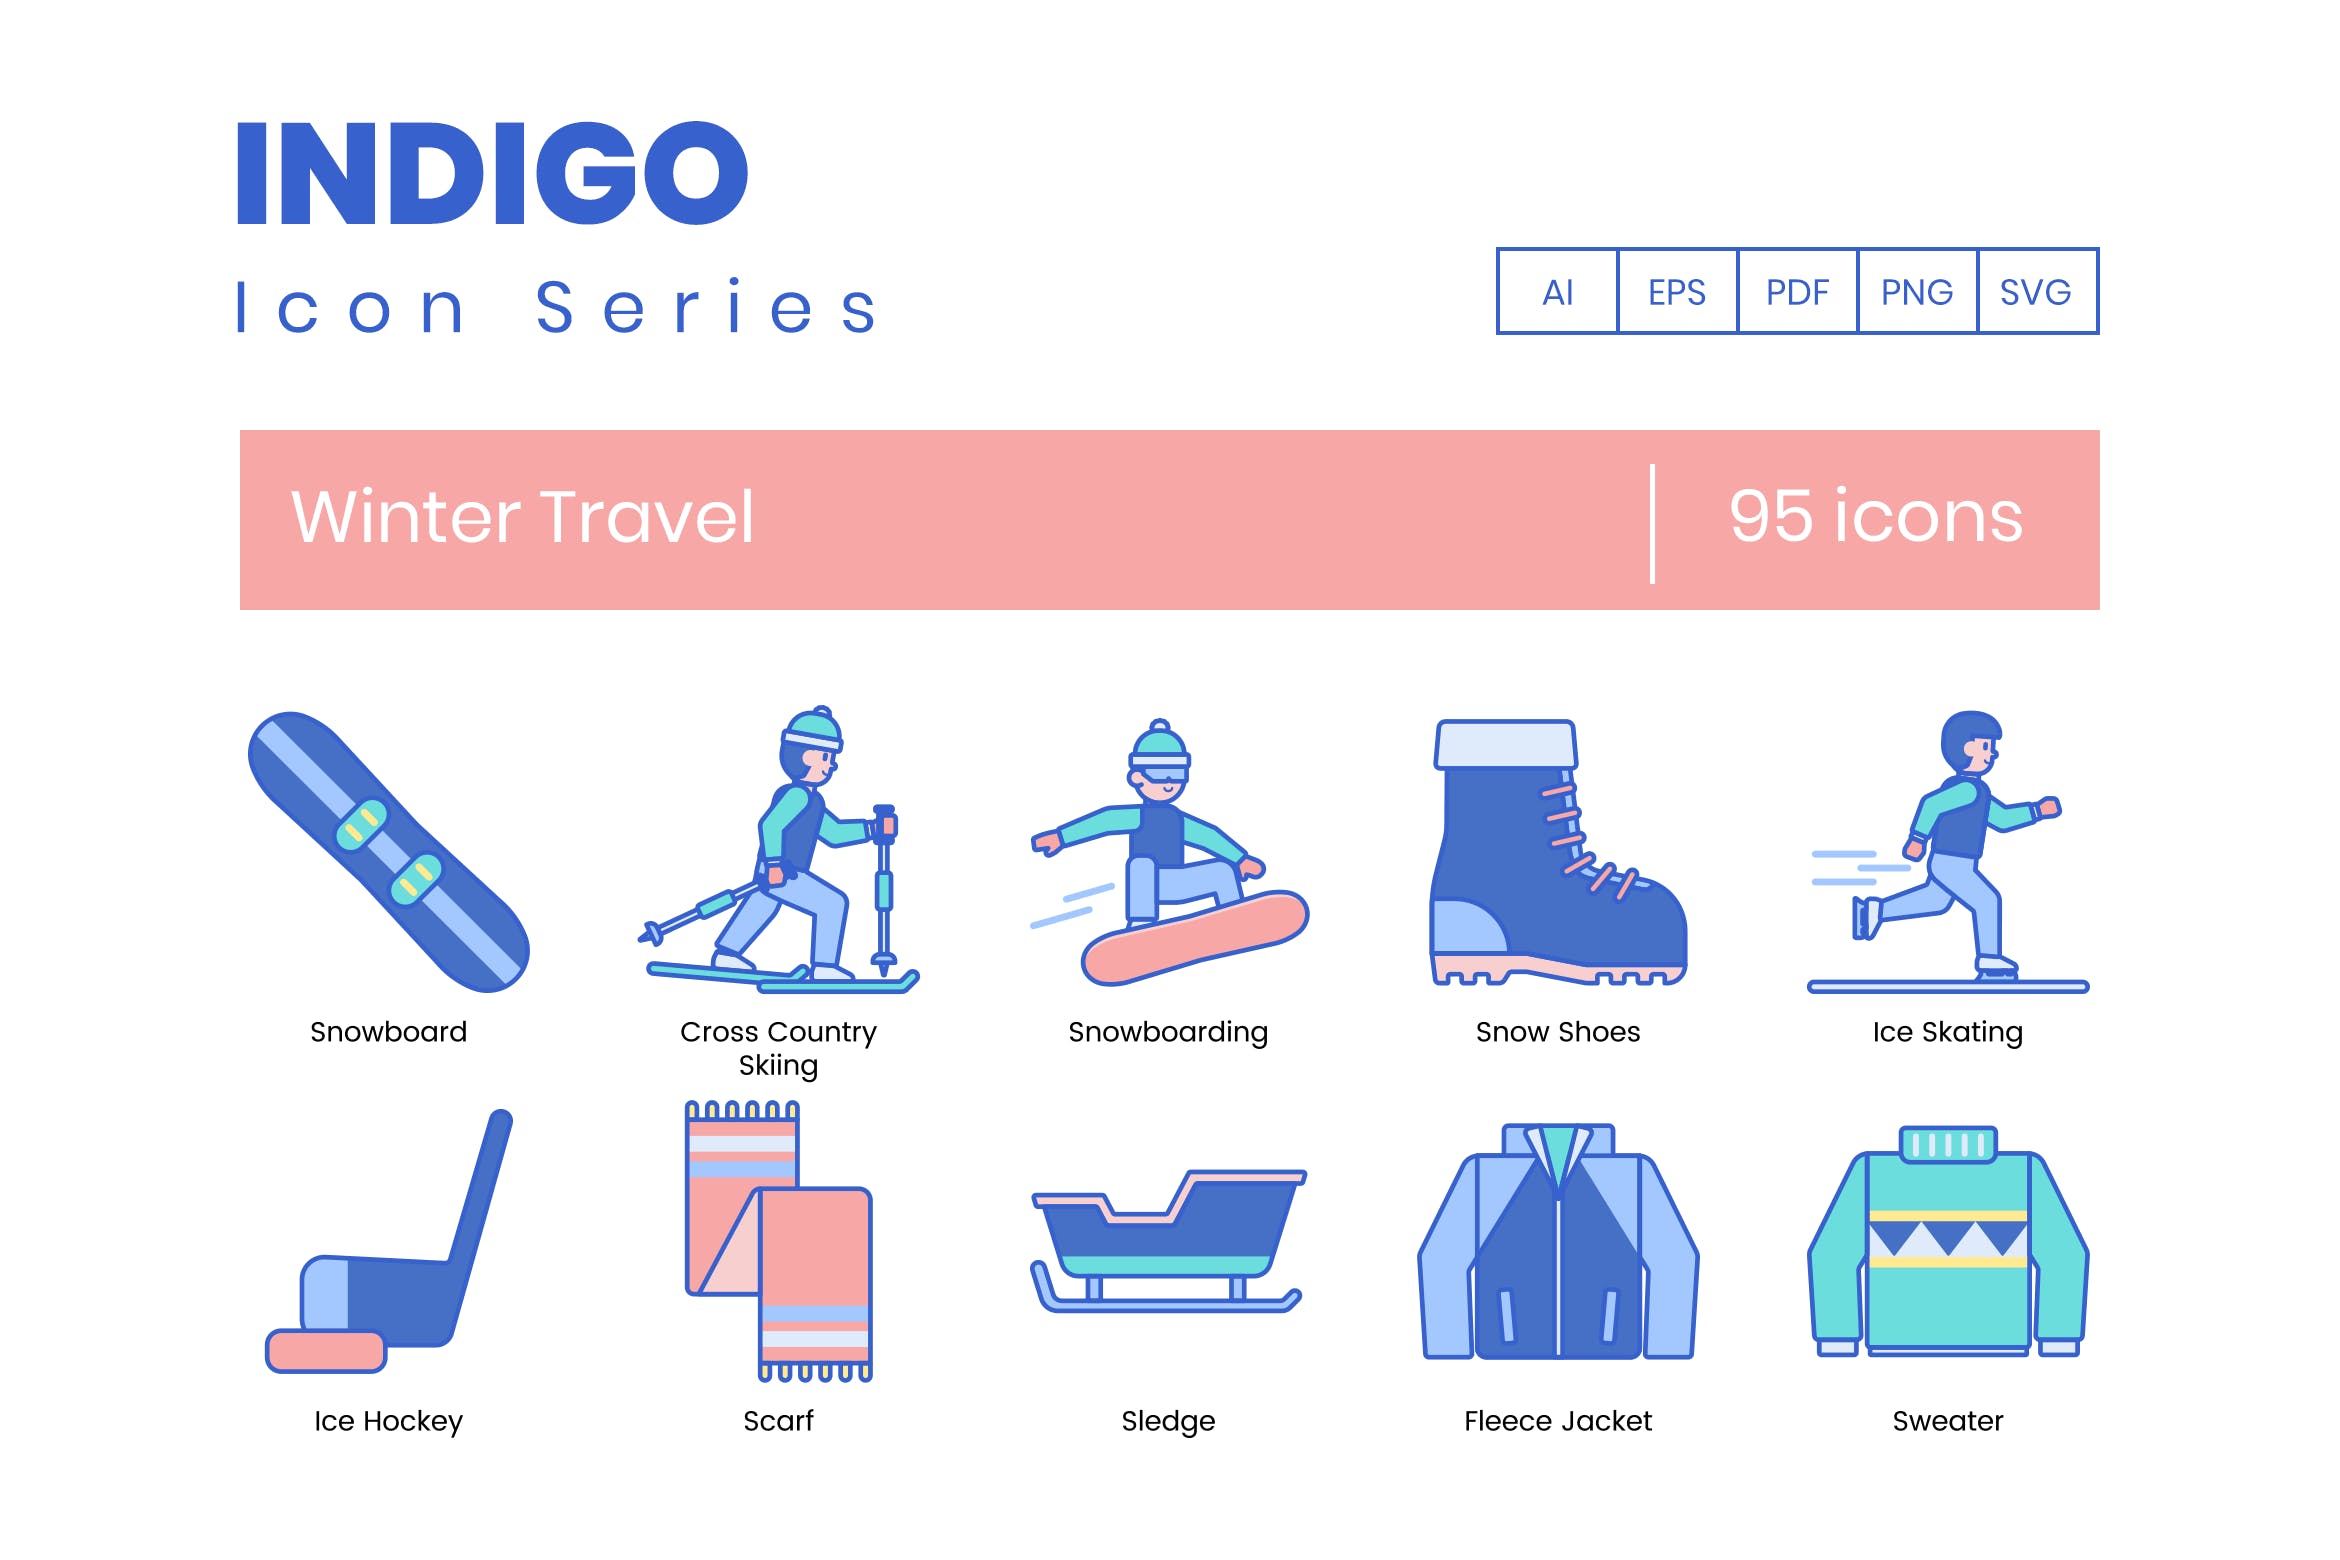 95枚靛蓝配色冬季旅行主题矢量素材库精选图标合集 95 Winter Travel Icons | Indigo Series插图